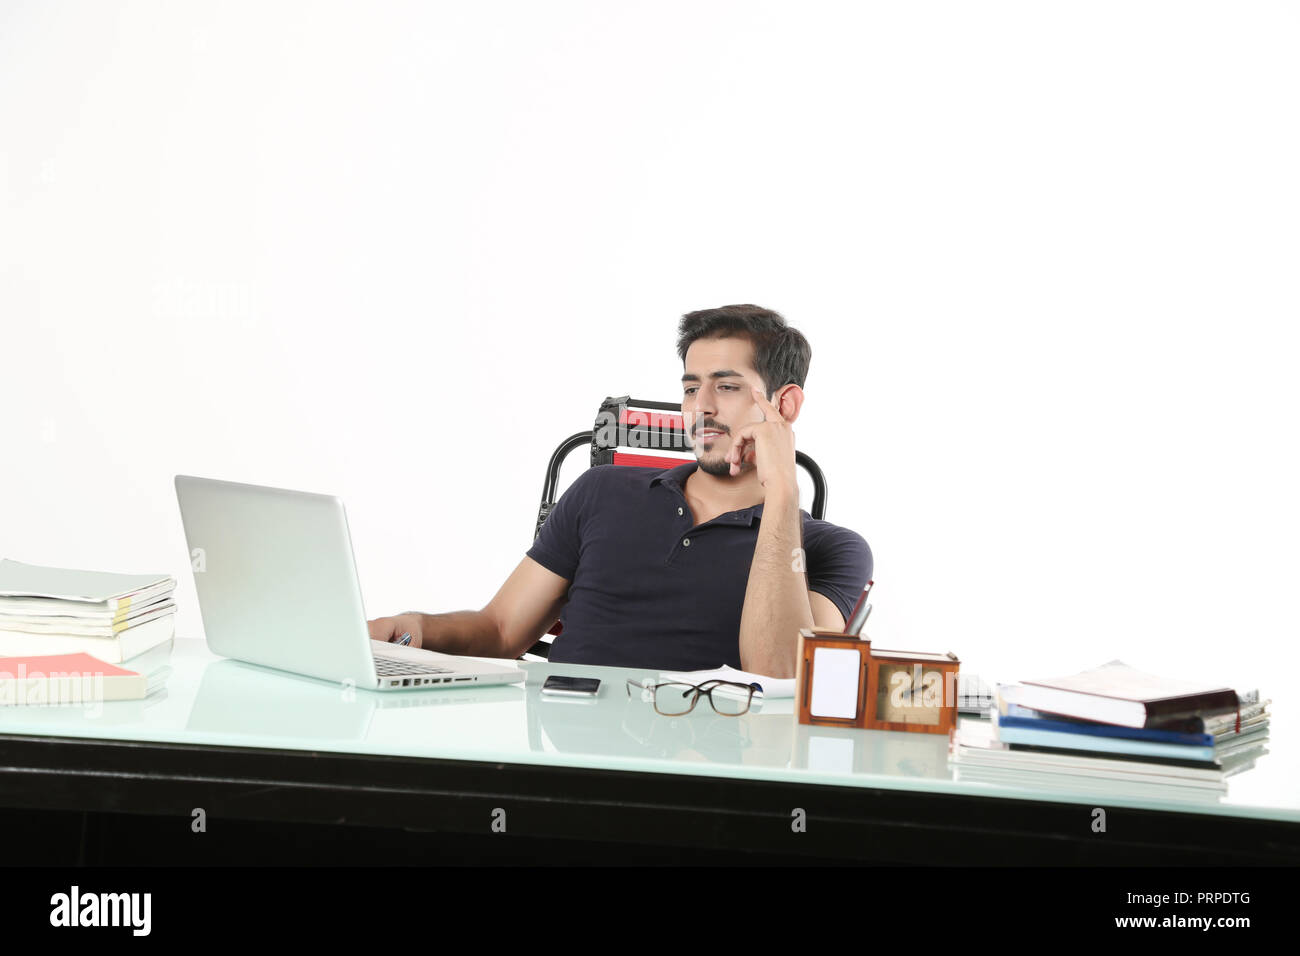 L'homme est à la recherche de travail avec ordinateur portable assis sur la chaise dans la cabine. isolé sur fond blanc. Banque D'Images